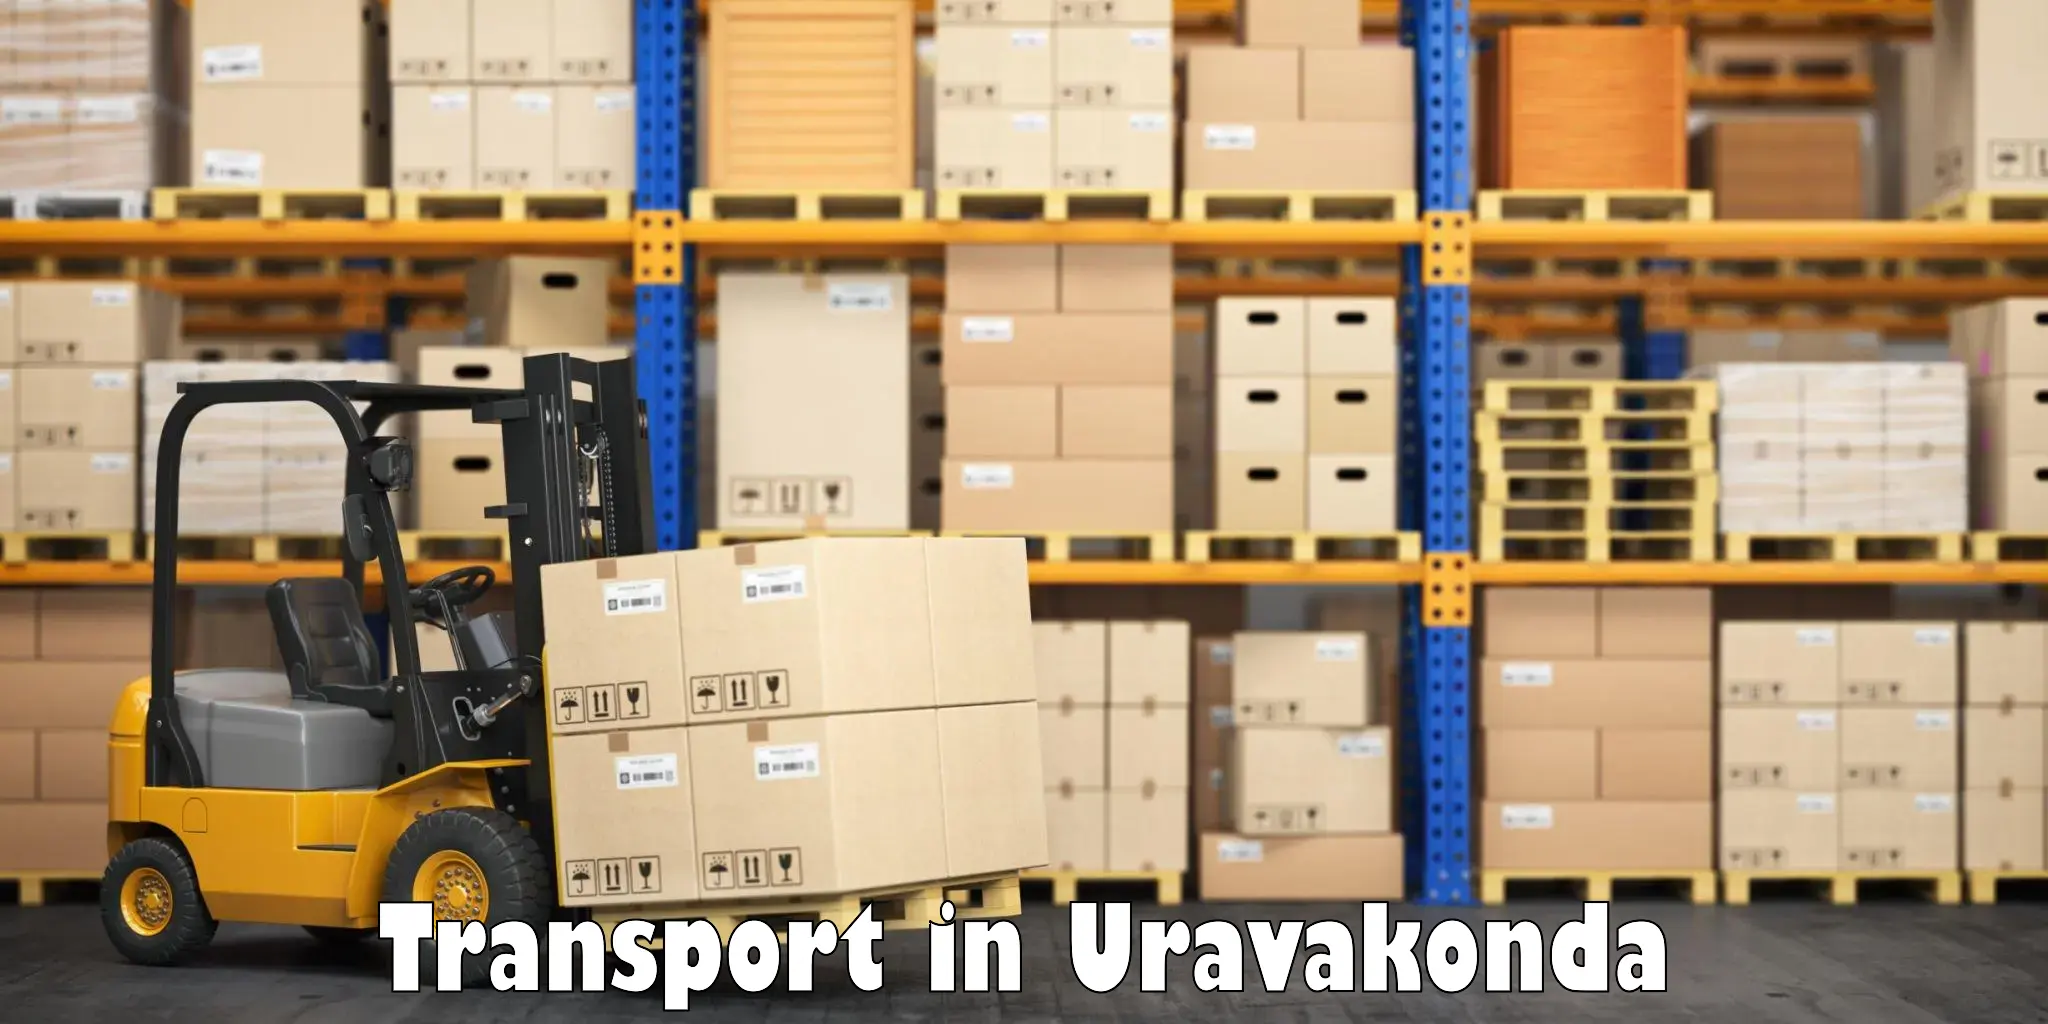 Container transport service in Uravakonda